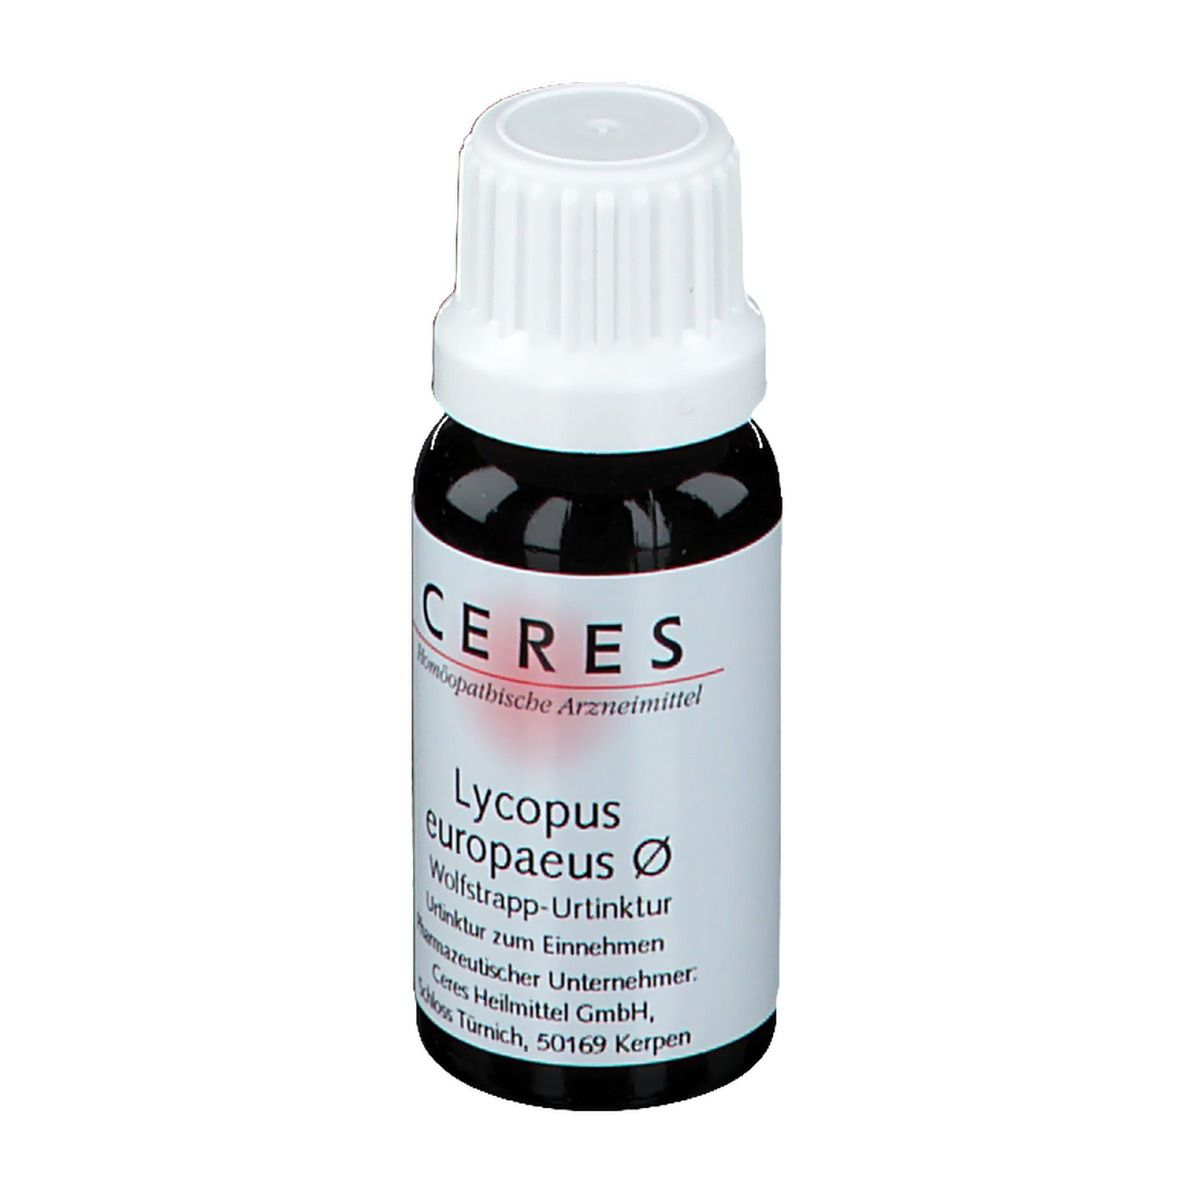 Ceres Lycopus Eur Urtinktur Tropfen